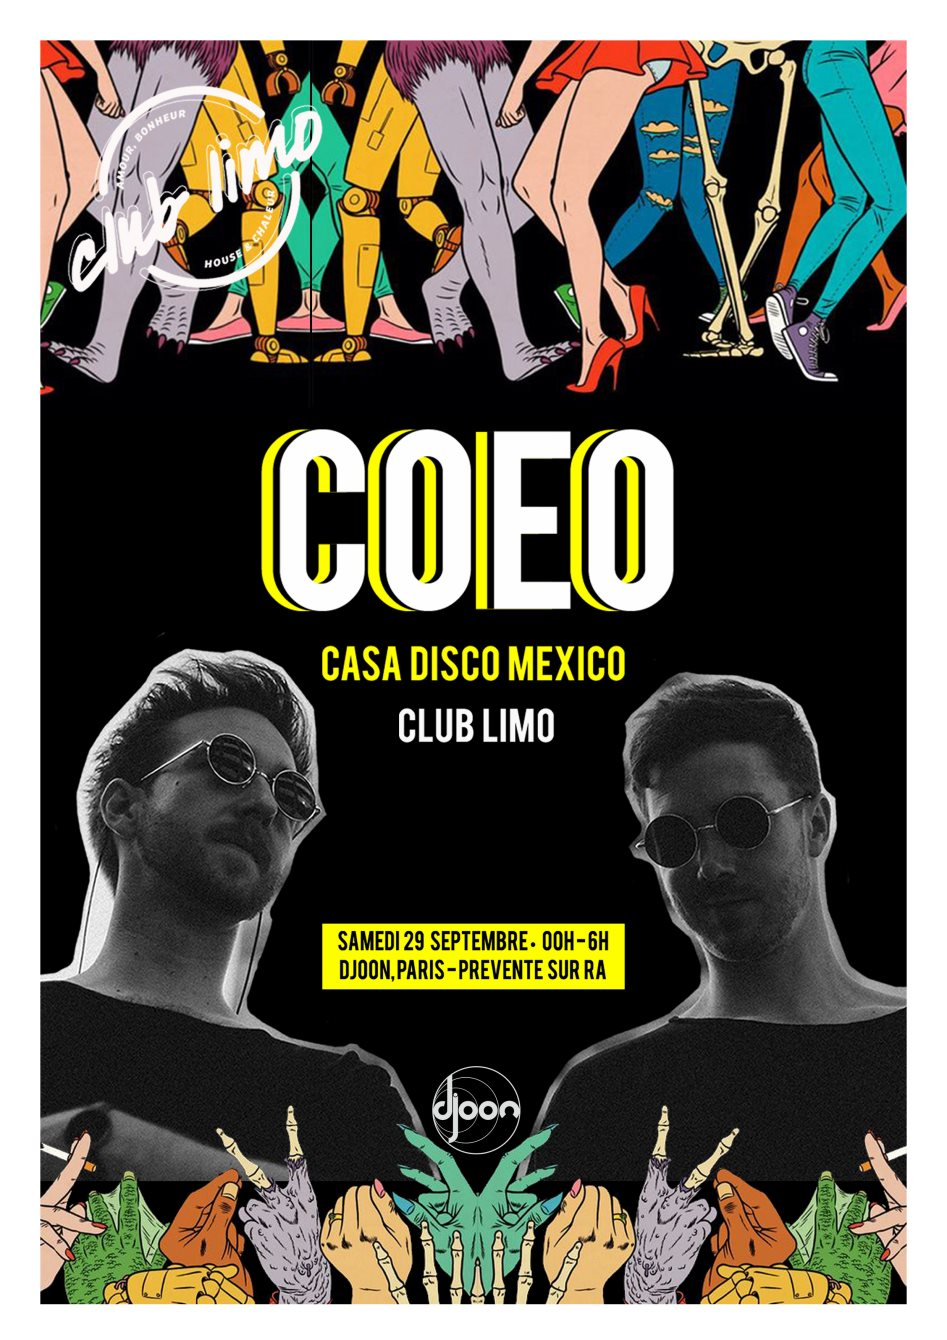 Club Limo Invite COEO & Casa Disco - Flyer back